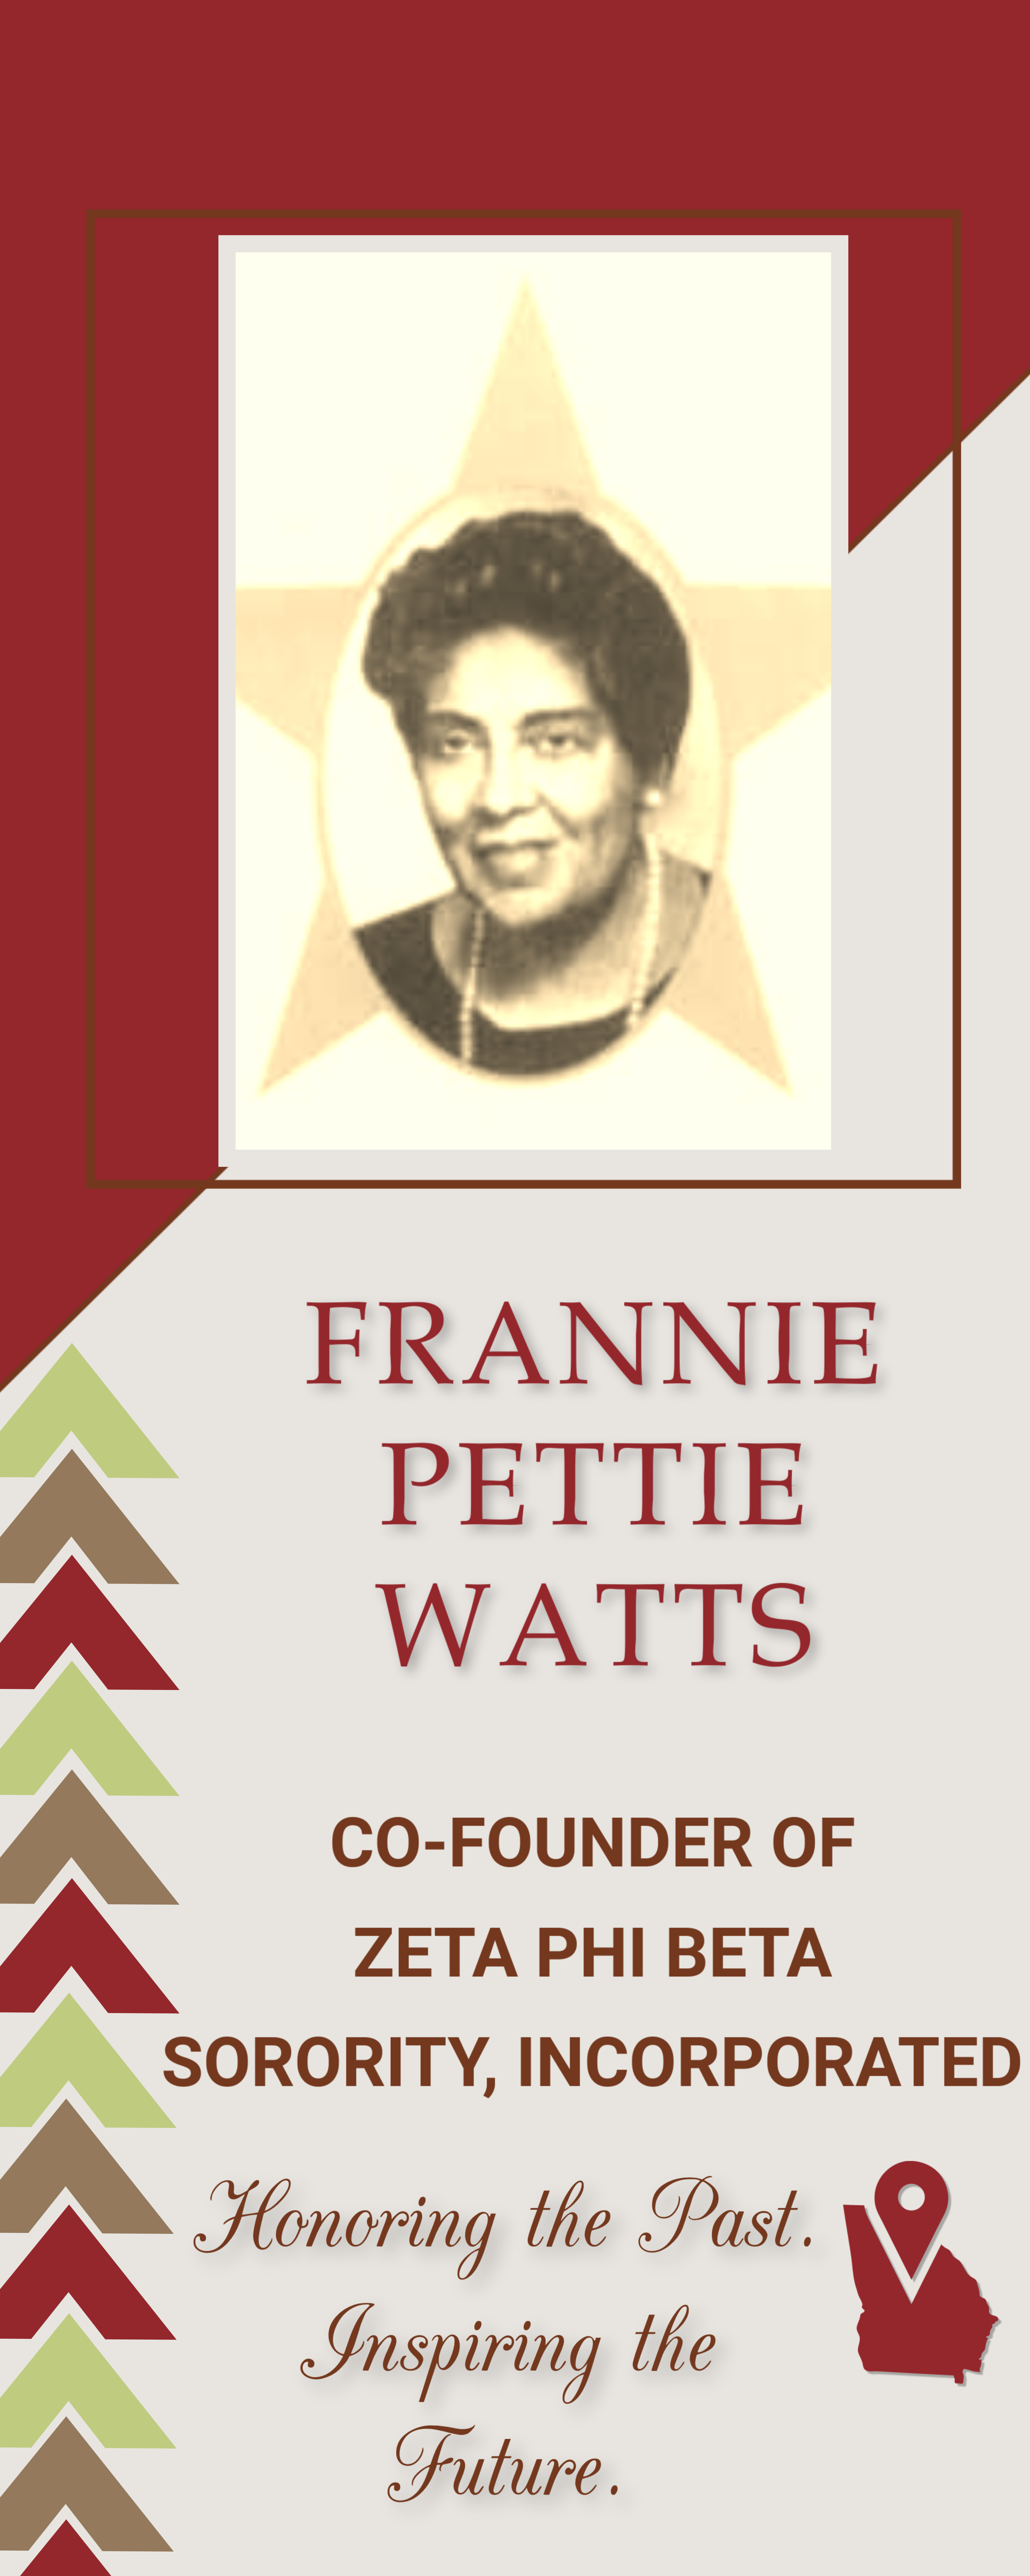 Frannie Pettie Watts